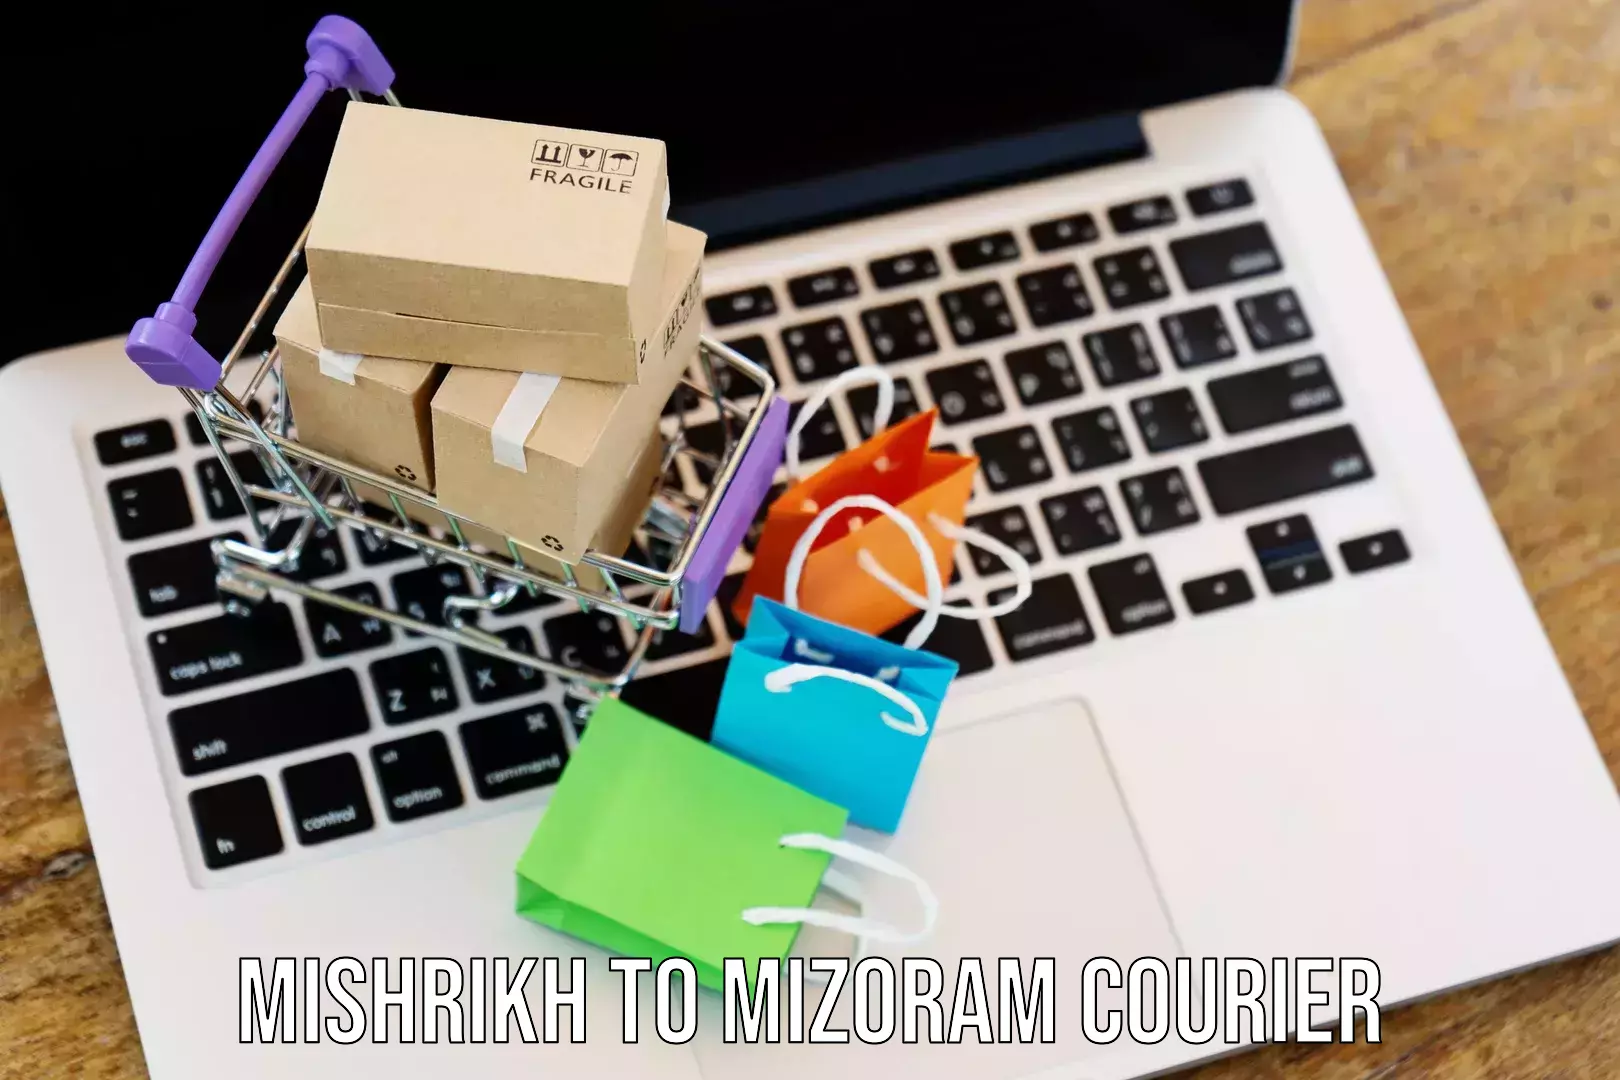 Premium courier solutions Mishrikh to Mizoram